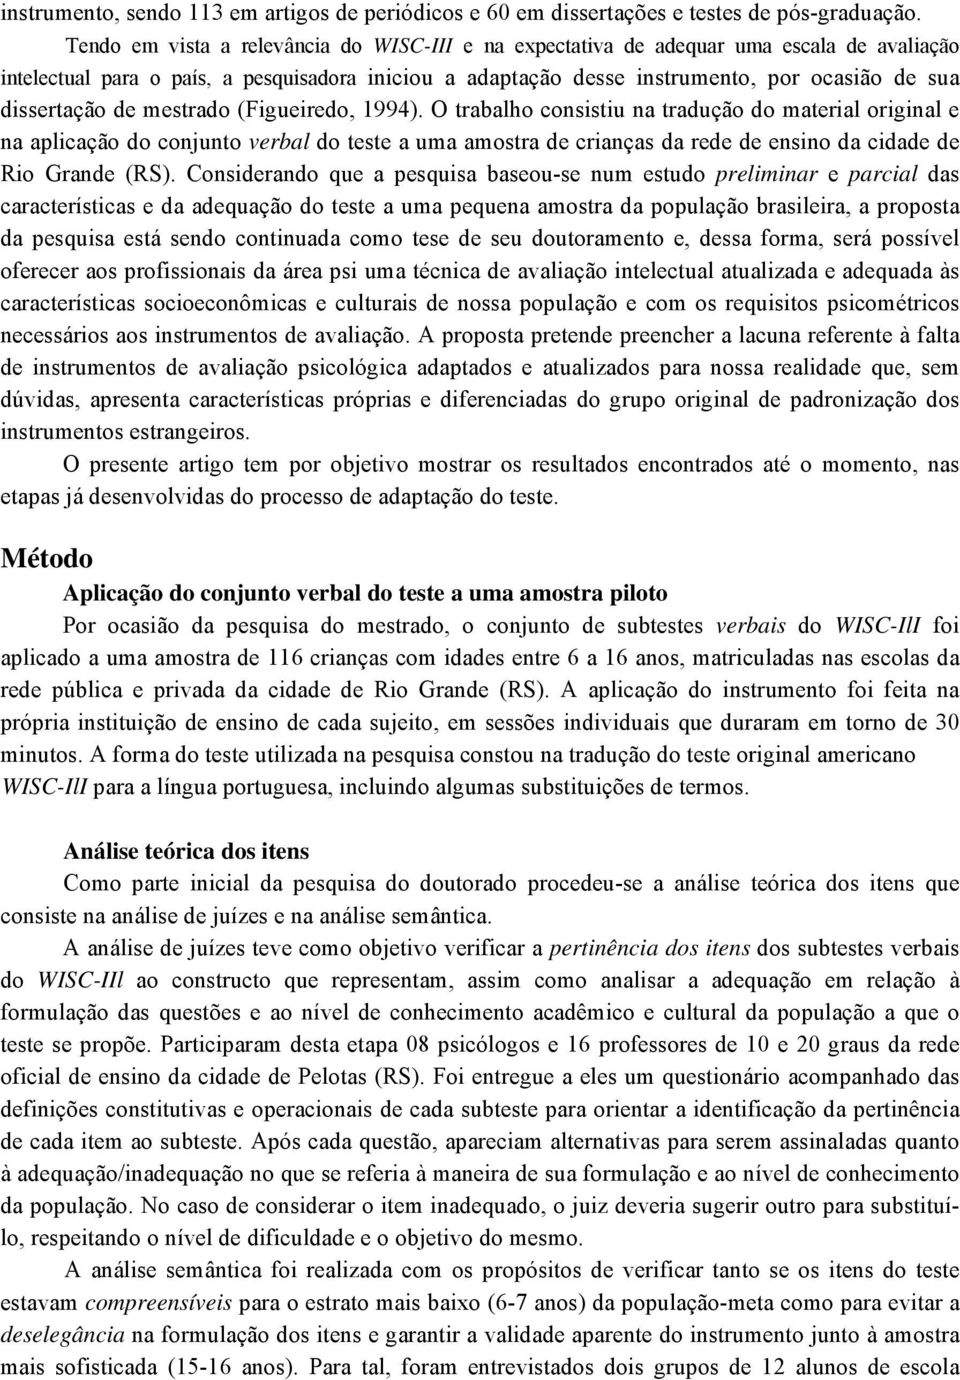 dissertação de mestrado (Figueiredo, 1994).